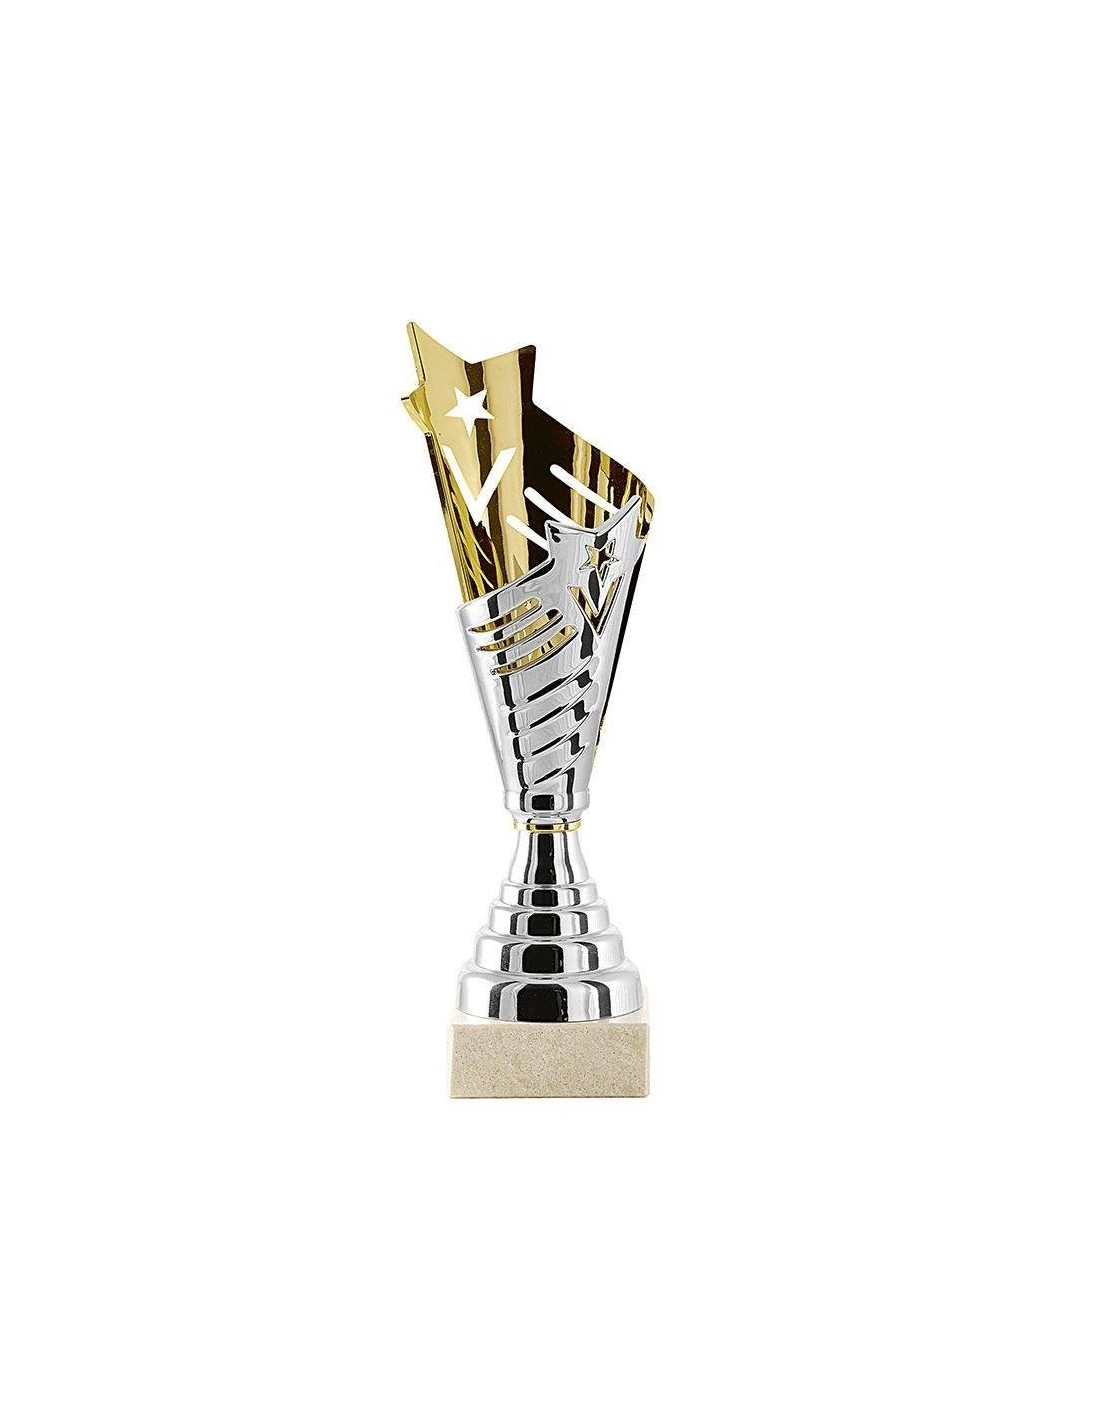 Trophée d'or Coupe Trophées en plastique Coupes Trophées du